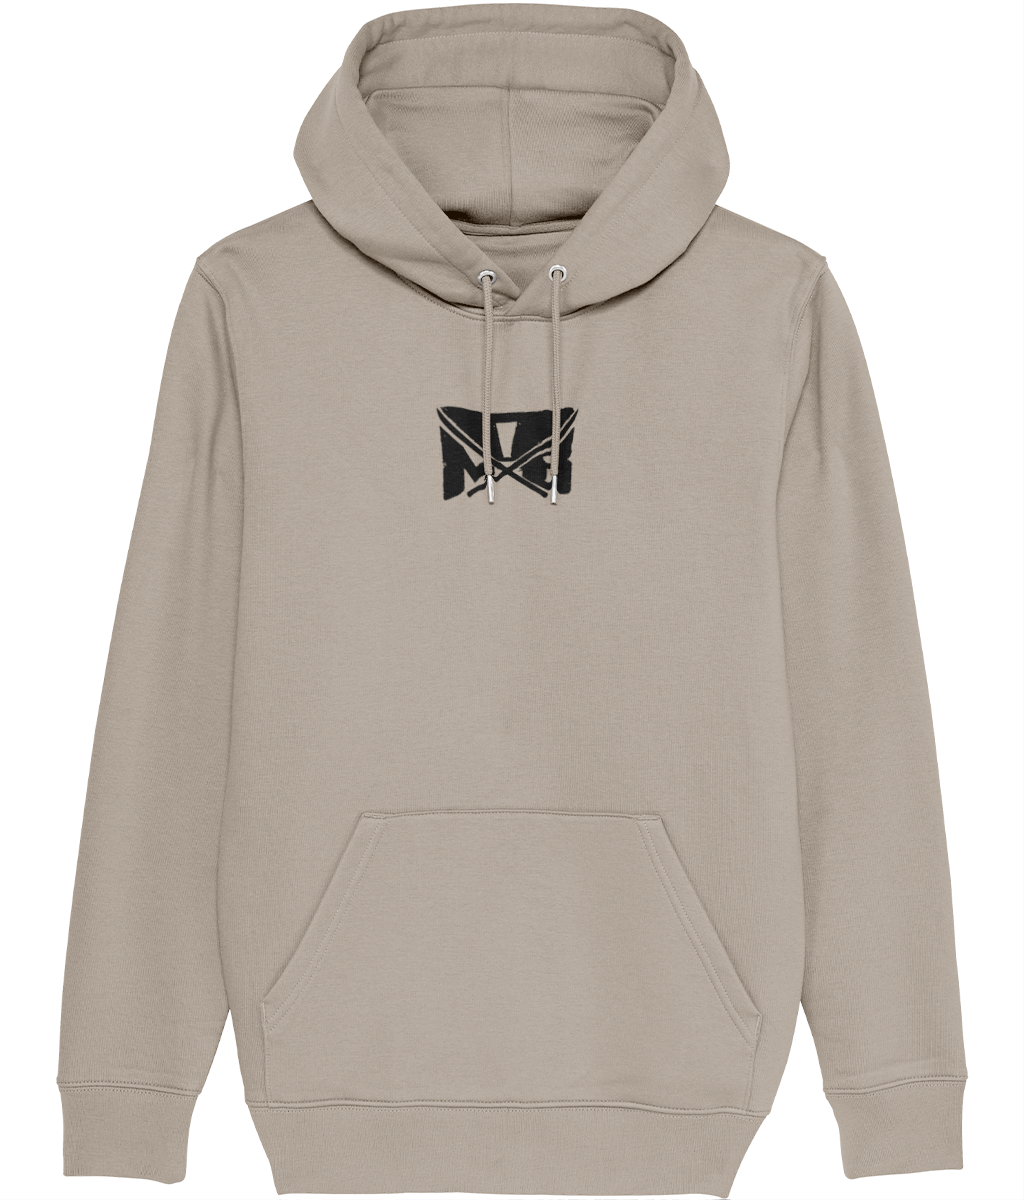 MOB Lion hoodie